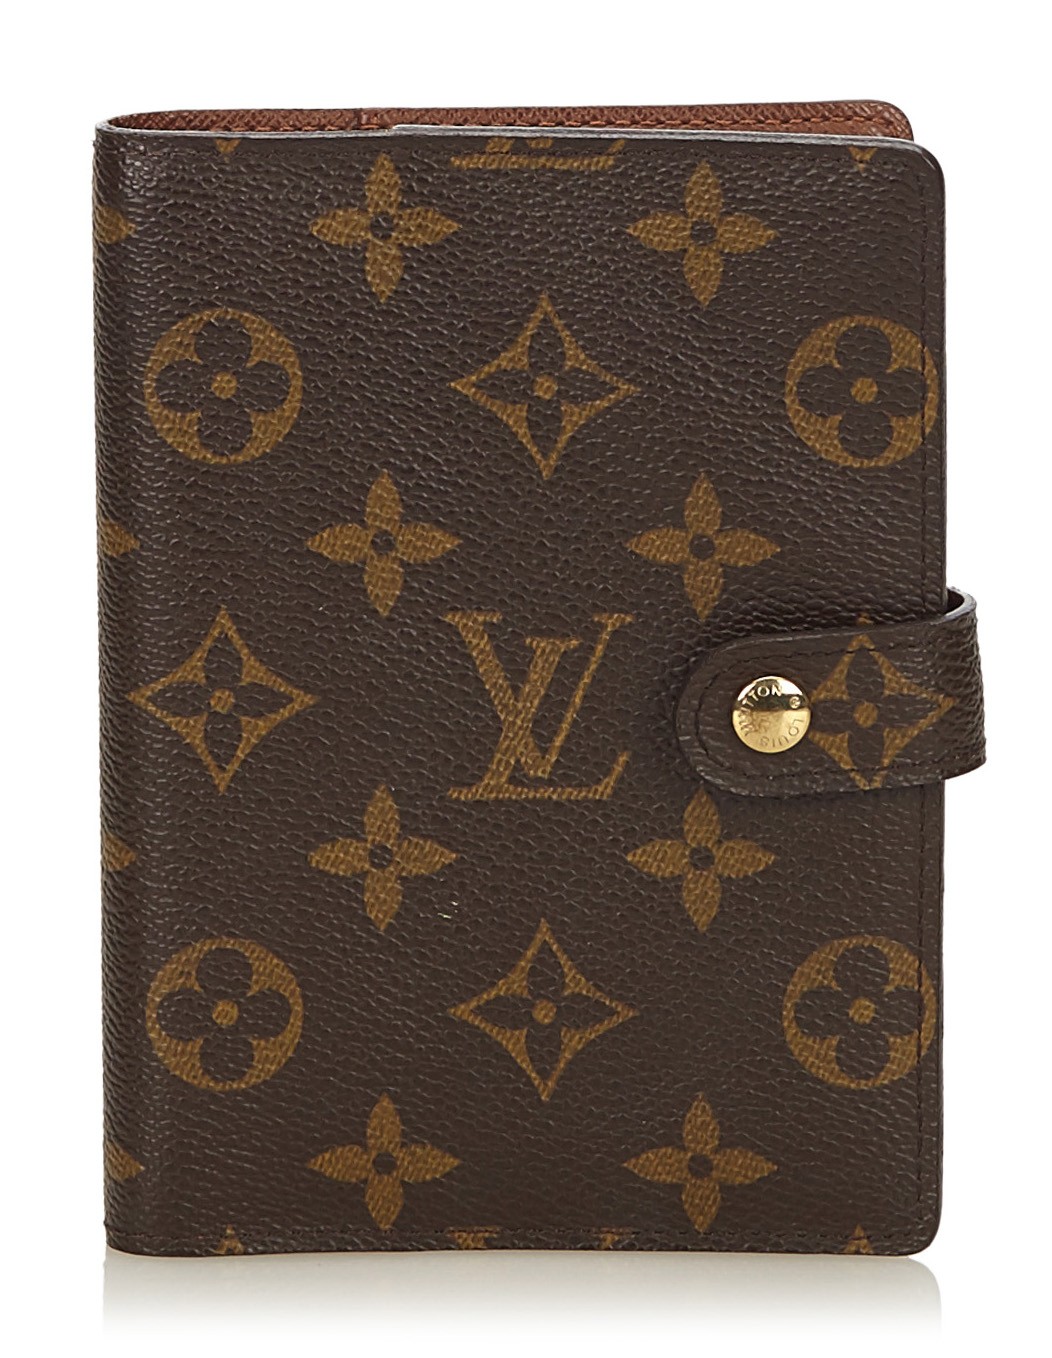 Best Authentic Vintage Louis Vuitton Agenda Pm Planner/ Wallet Epi